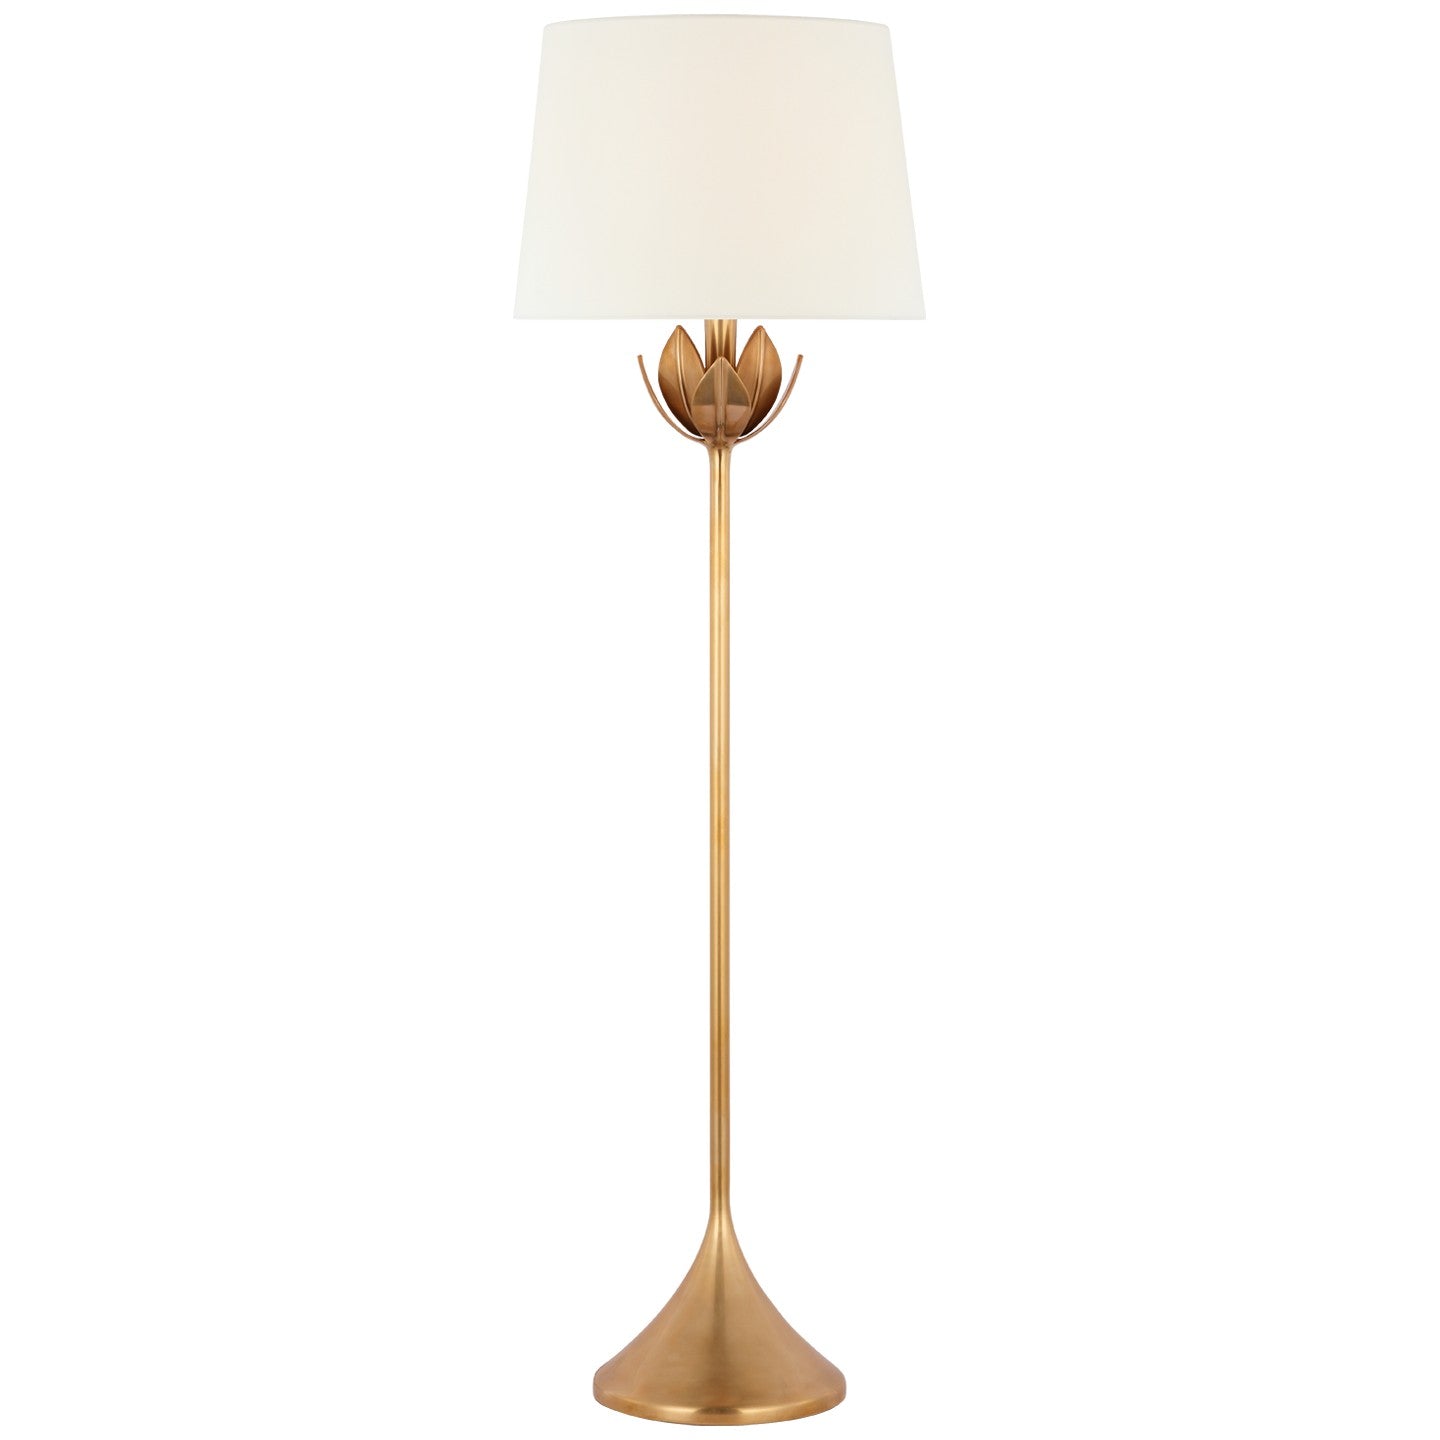 Visual Comfort Signature Canada - One Light Floor Lamp - Alberto - Antique-Burnished Brass- Union Lighting Luminaires Decor